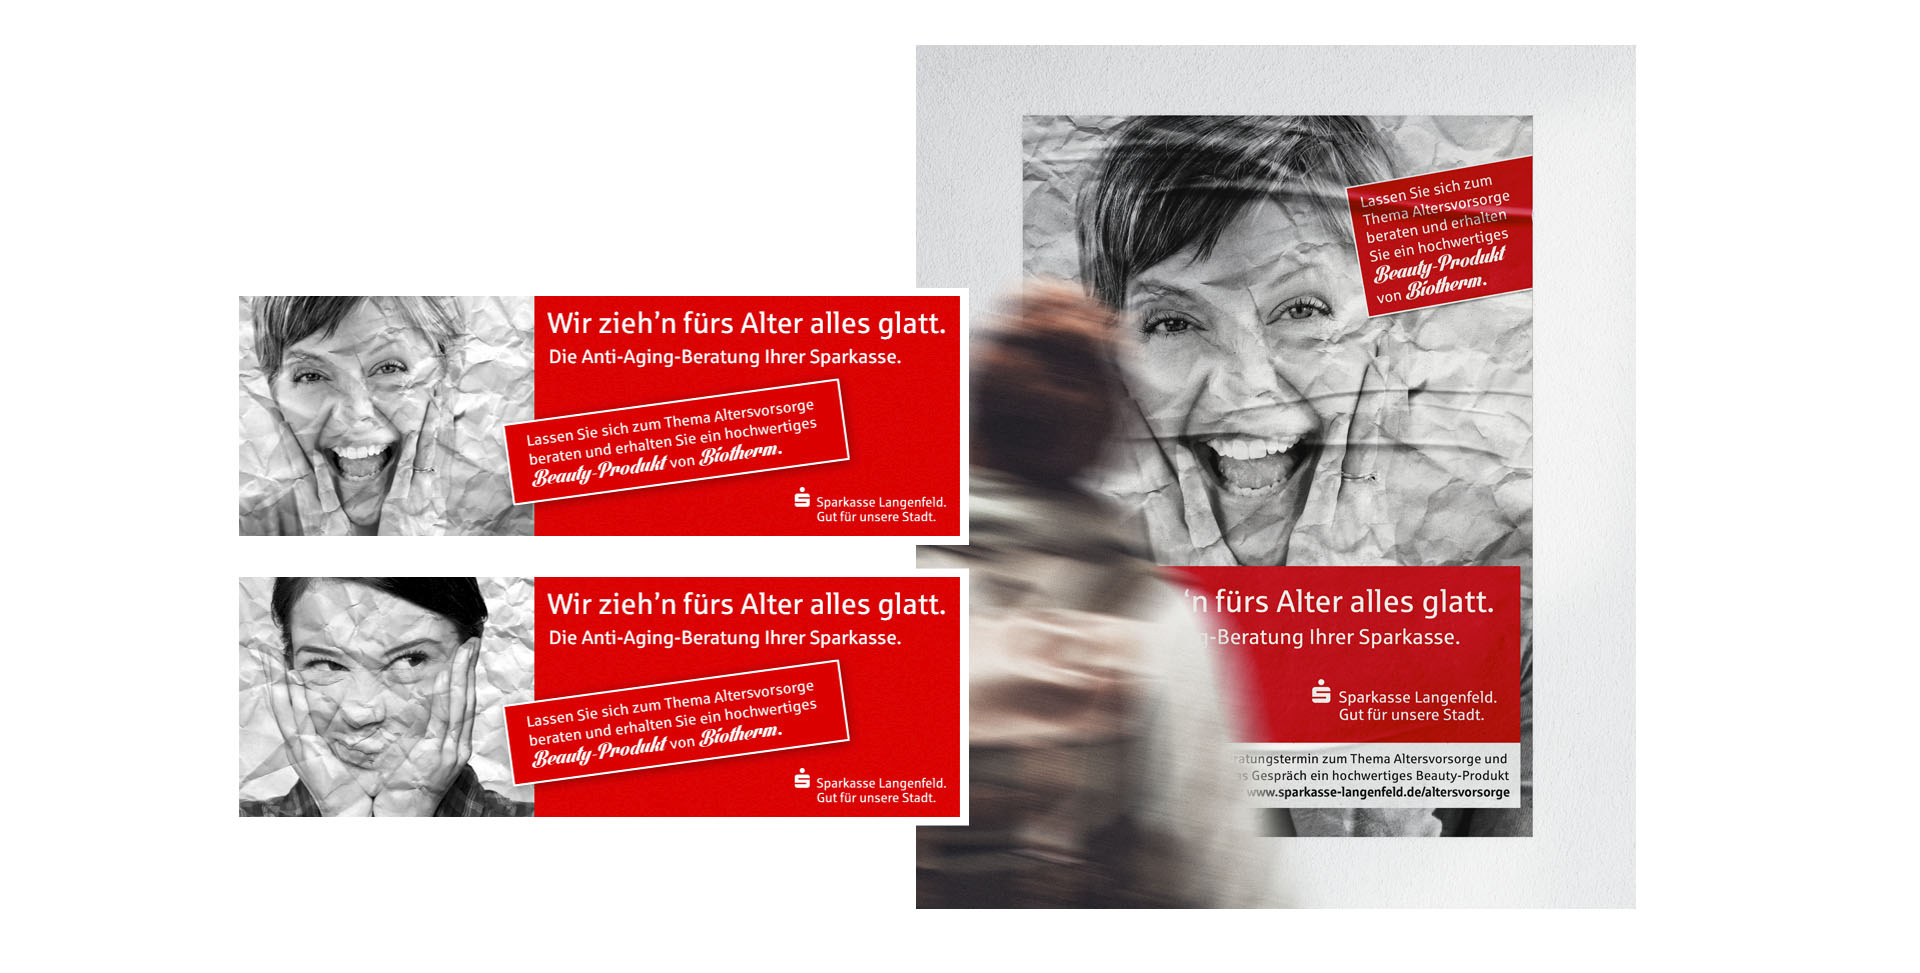 Sparkasse Langenfeld Altersvorsorge Kampagne 